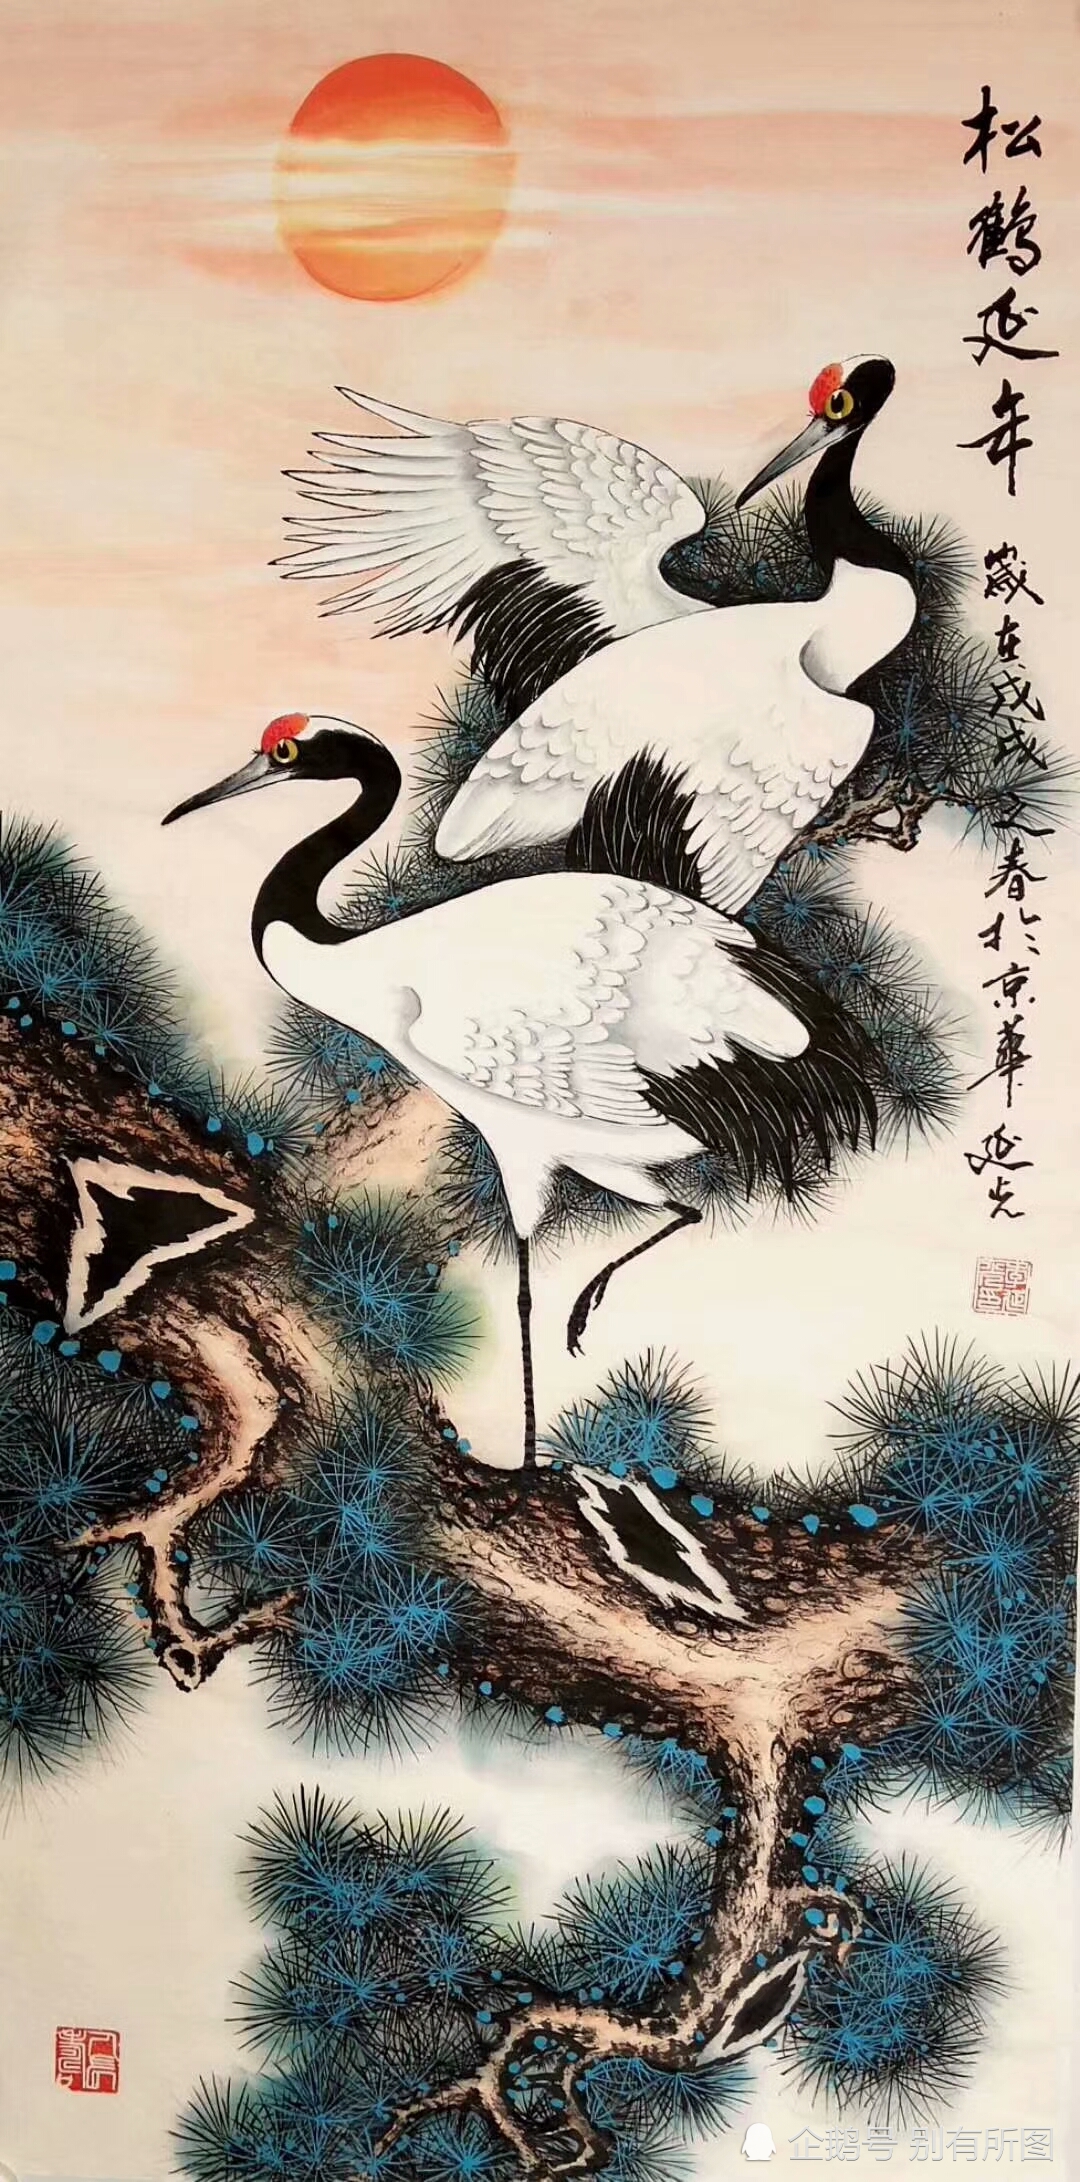 国家一级美术师李延光《松鹤延年》国画水墨花鸟画作品,喜欢收藏